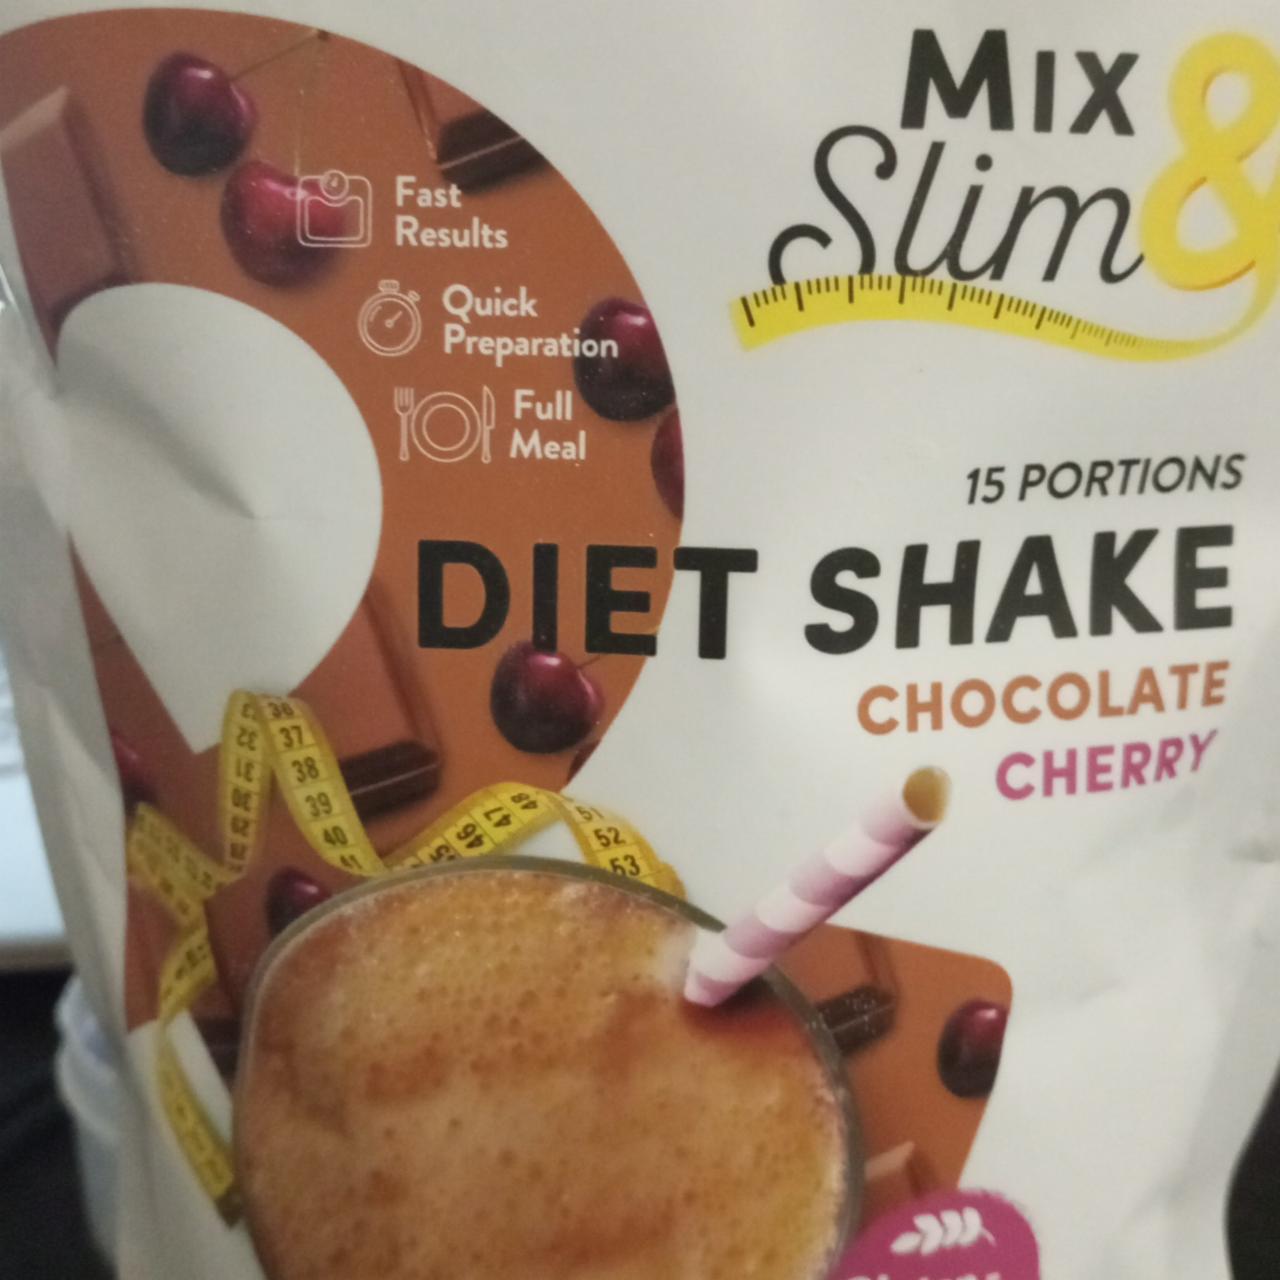 Fotografie - Diet Shake chocolate cherry Mix & Slim